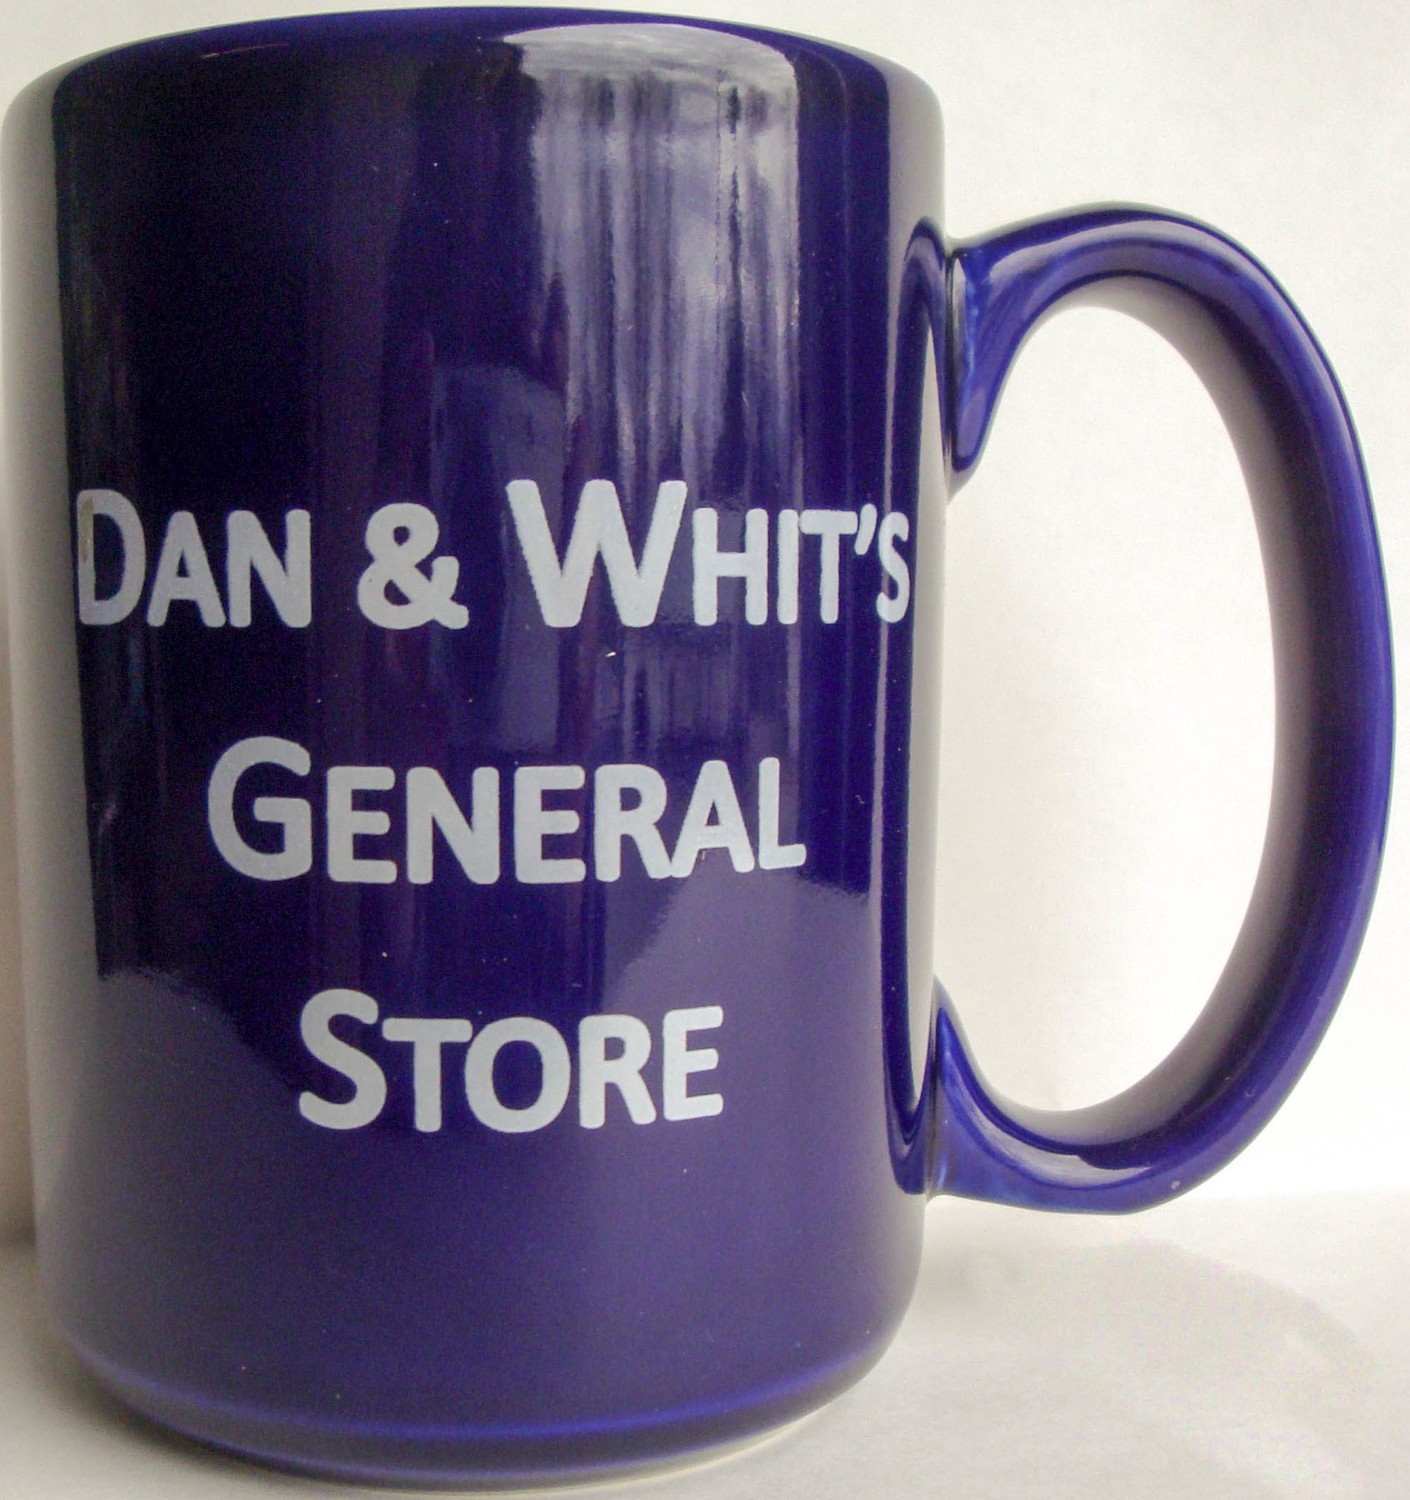 Dan & Whit's Ceramic Coffee Mug